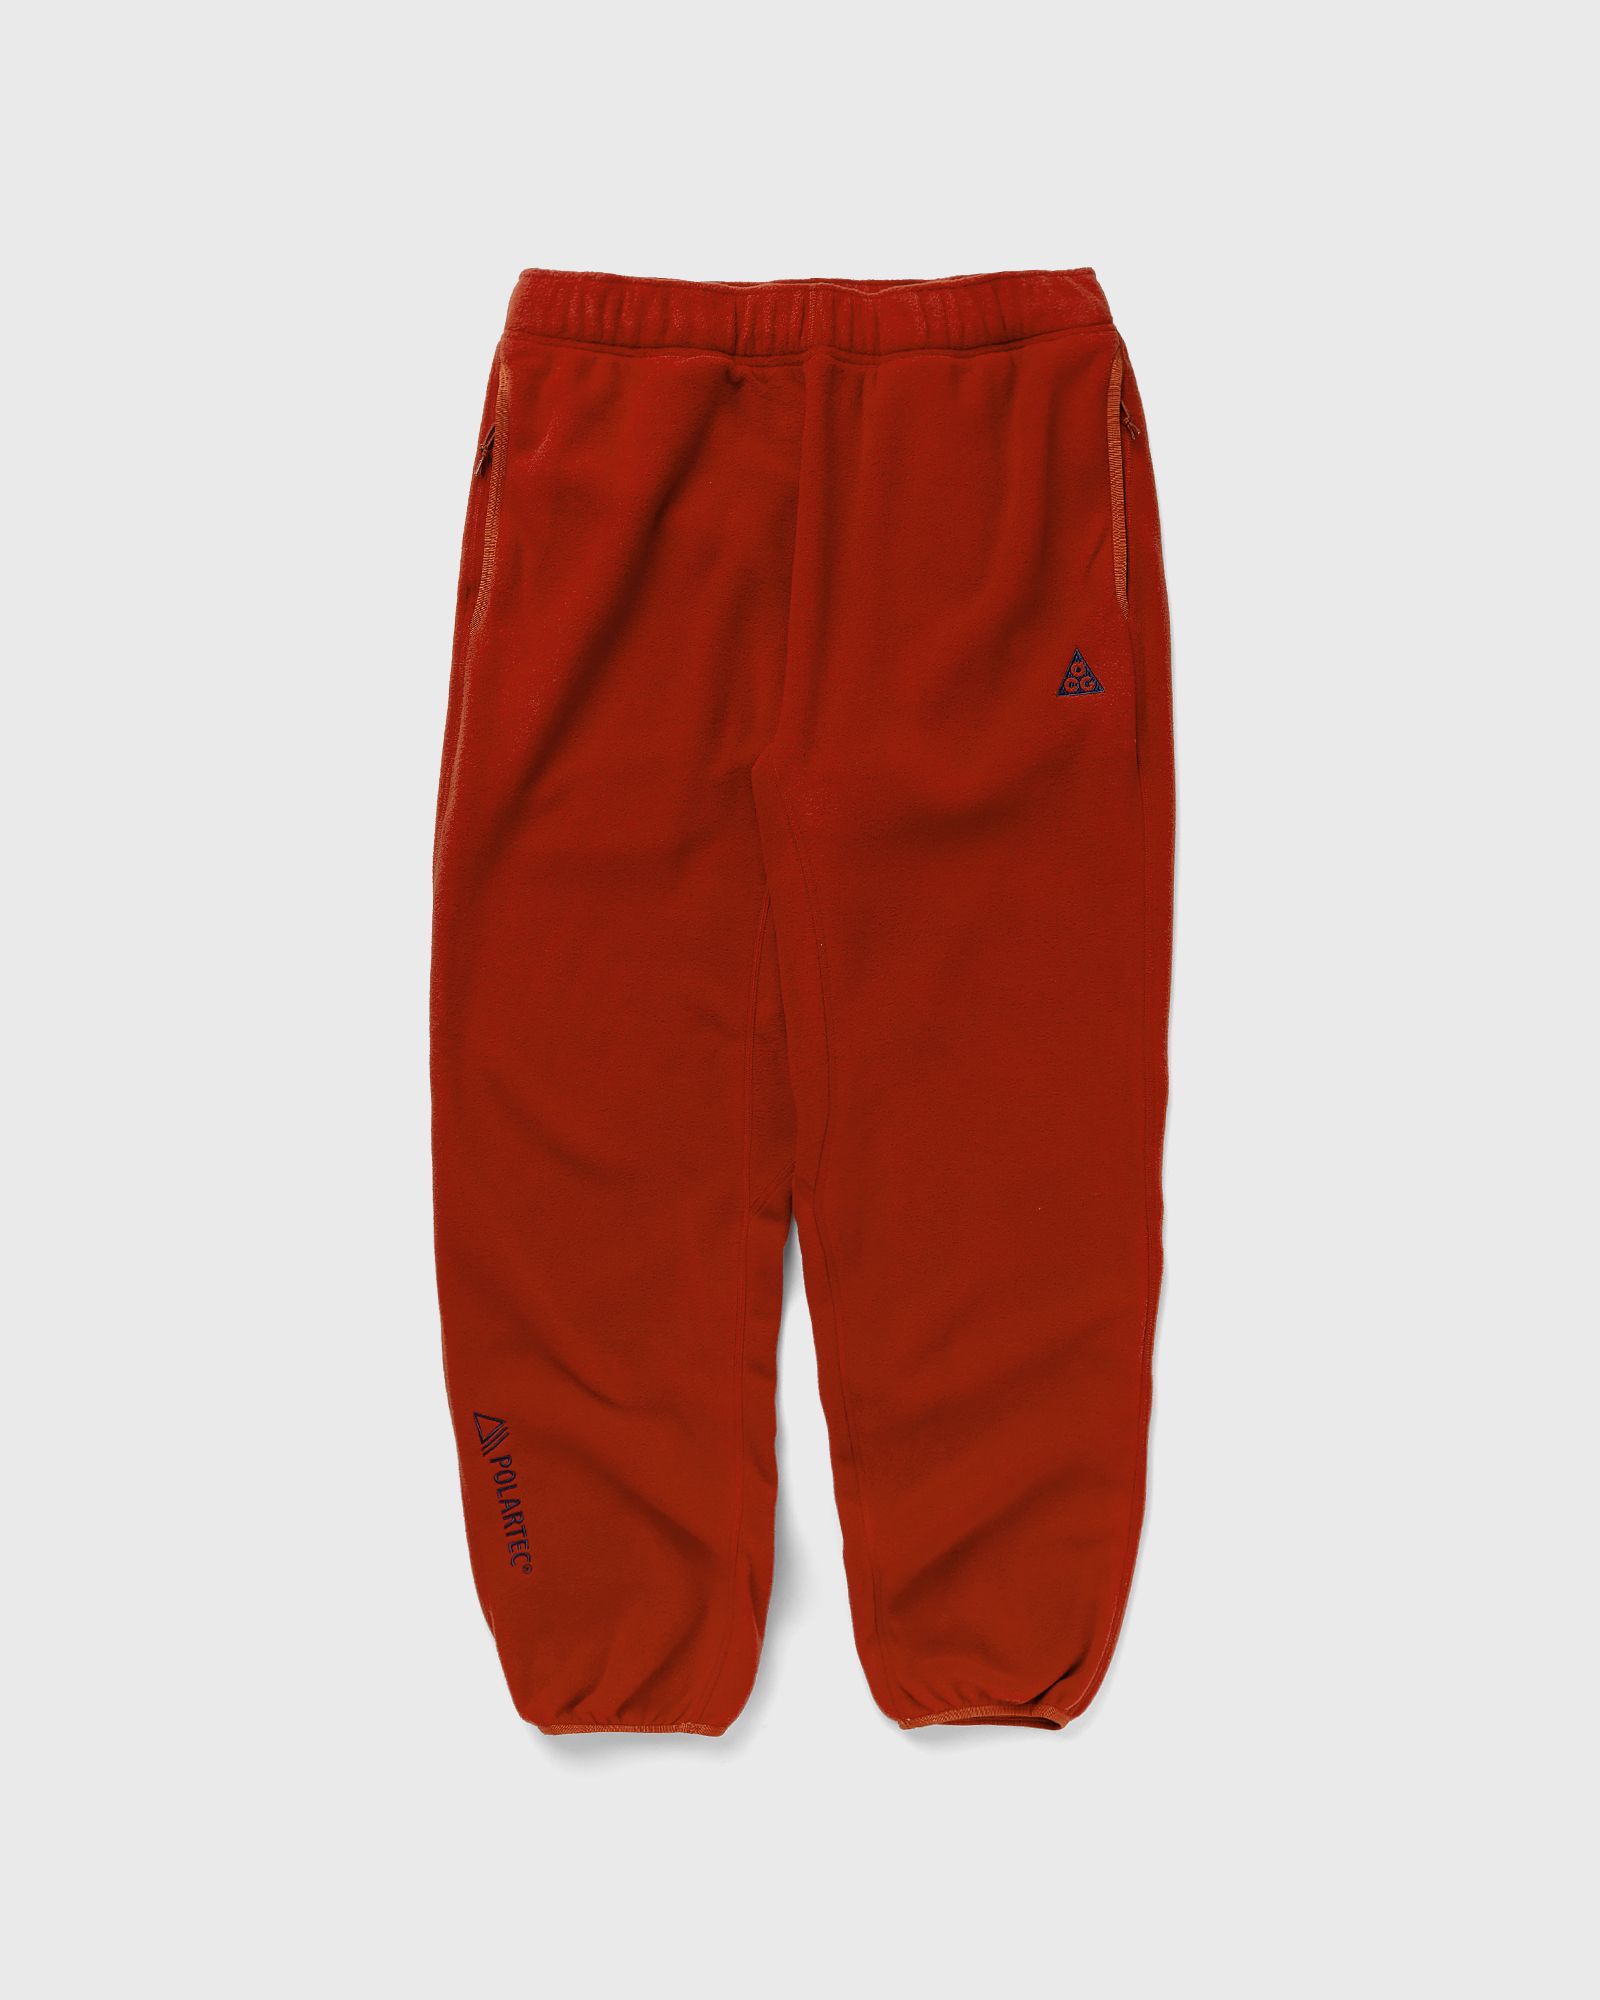 Nike - acg polartec "wolf tree" pants men sweatpants red in größe:xxl